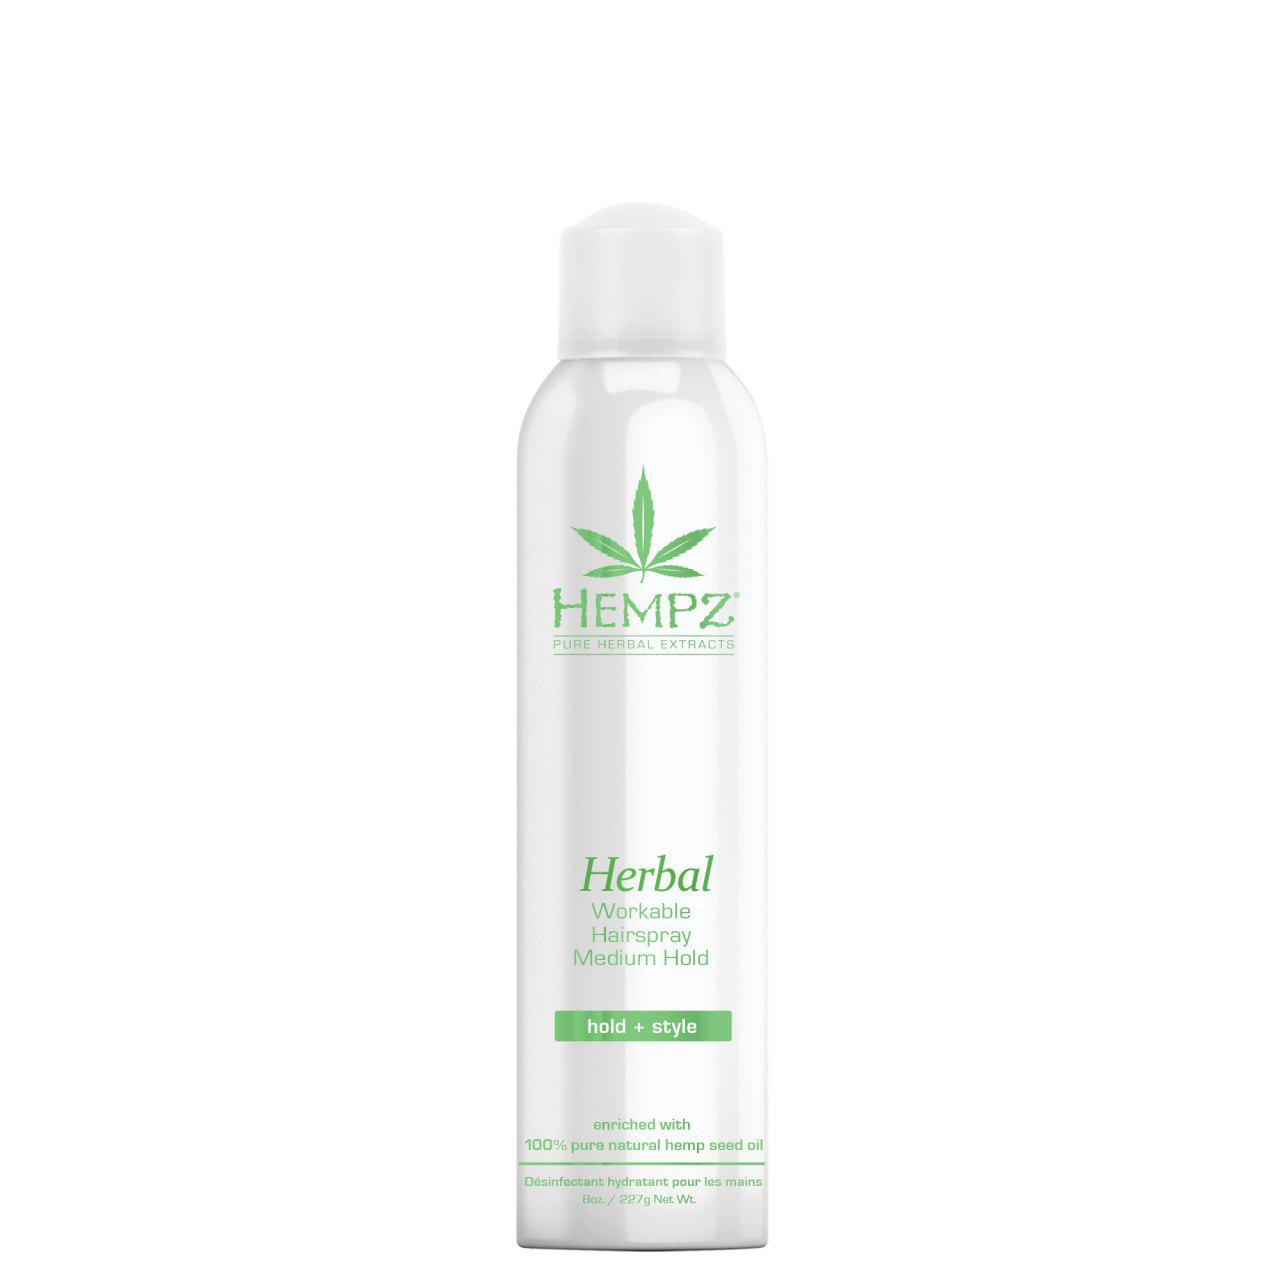 Hempz Herbal Workable Hairspray Medium Hold 227g - интернет-магазин профессиональной косметики Spadream, изображение 25450